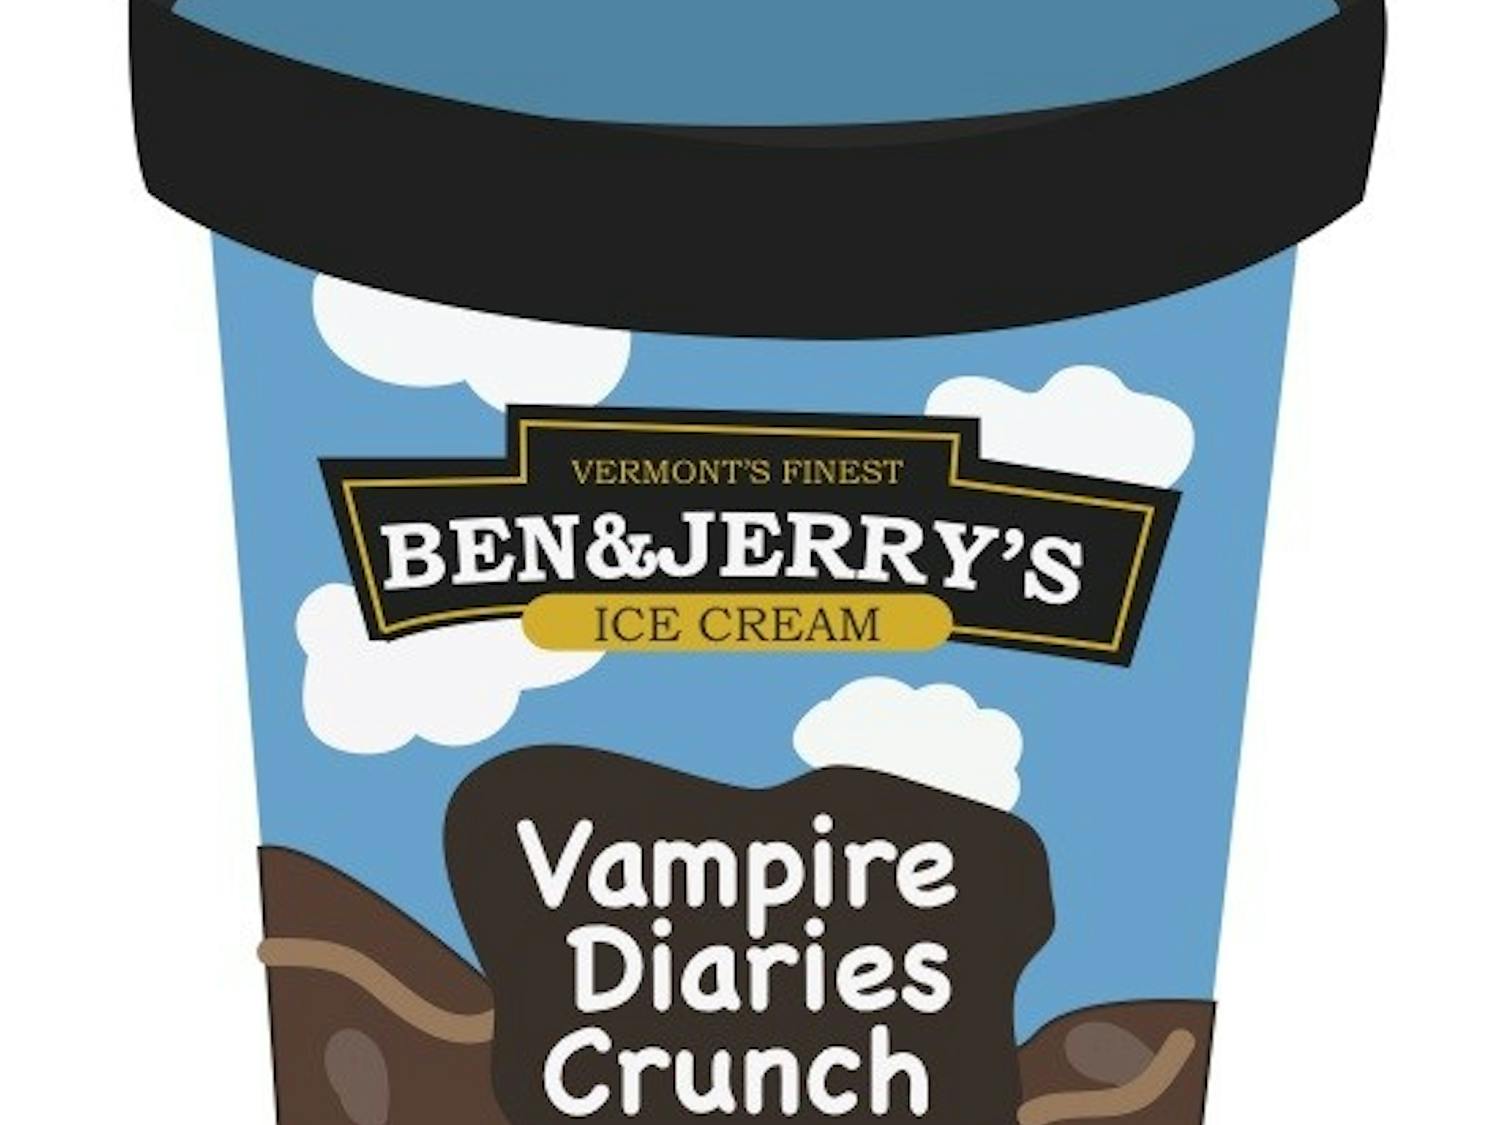 Vampire Diaries Crunch graphic